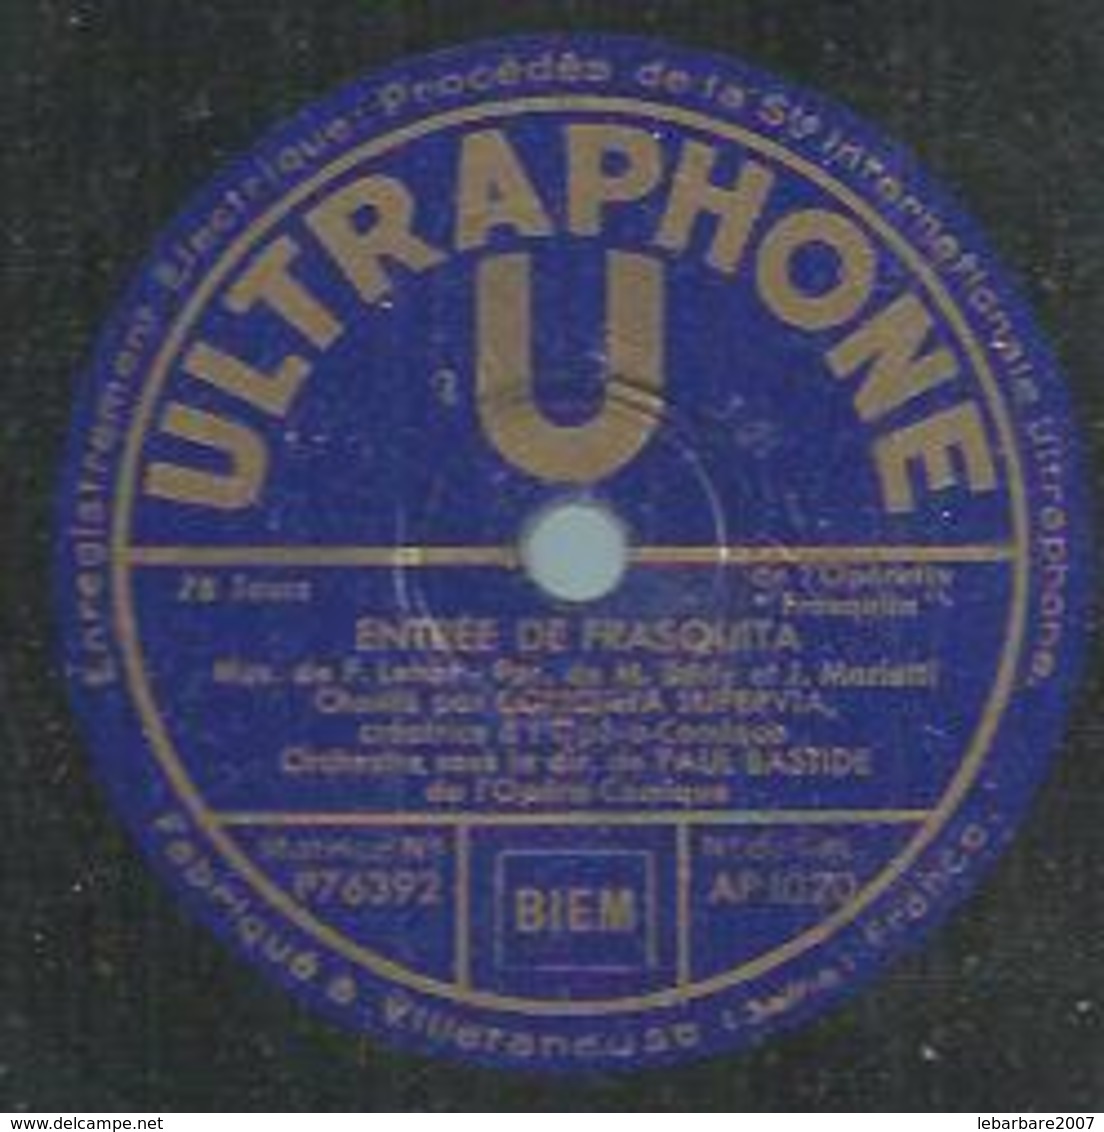 78 Tours - CONCHITA SUPERVIA  - ULTRAPHONE 1020  " ENTREE DE FRASQUITA " + " CE QUE C'EST QUE L'AMOUR " - 78 T - Disques Pour Gramophone